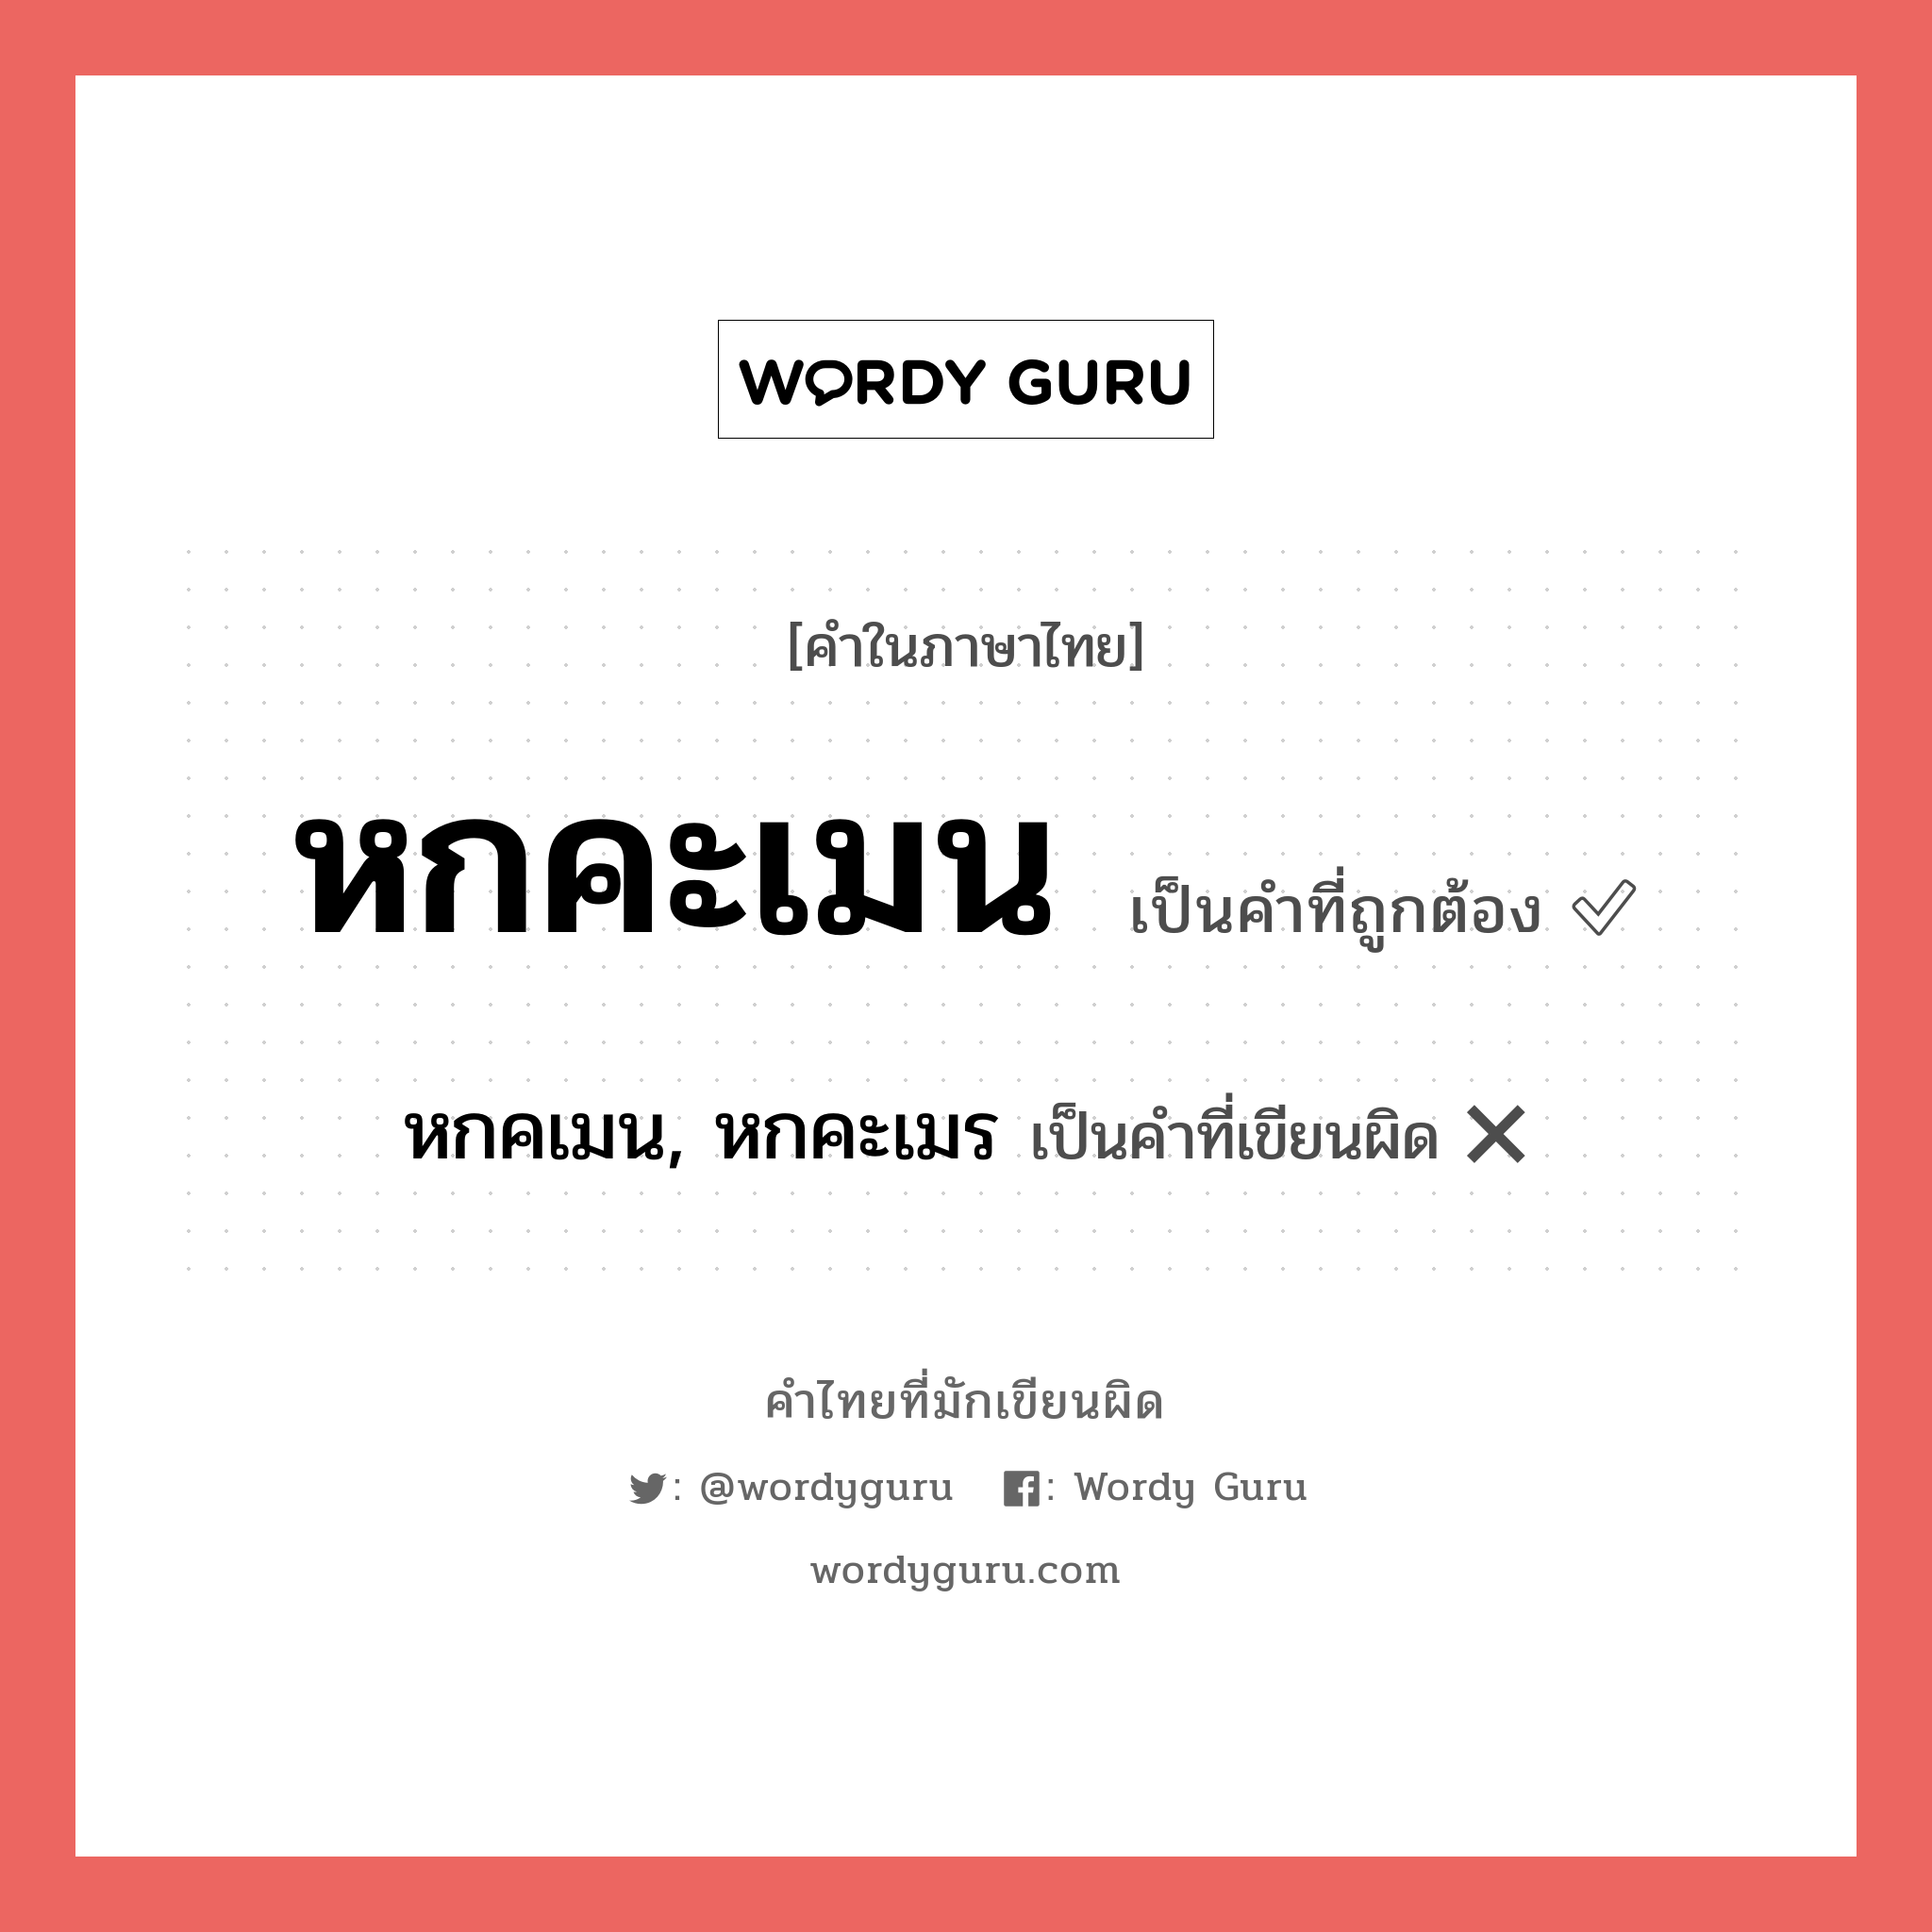 หกคะเมน หรือ หกคเมน, หกคะเมร คำไหนเขียนถูก?, คำในภาษาไทยที่มักเขียนผิด หกคะเมน คำที่ผิด ❌ หกคเมน, หกคะเมร